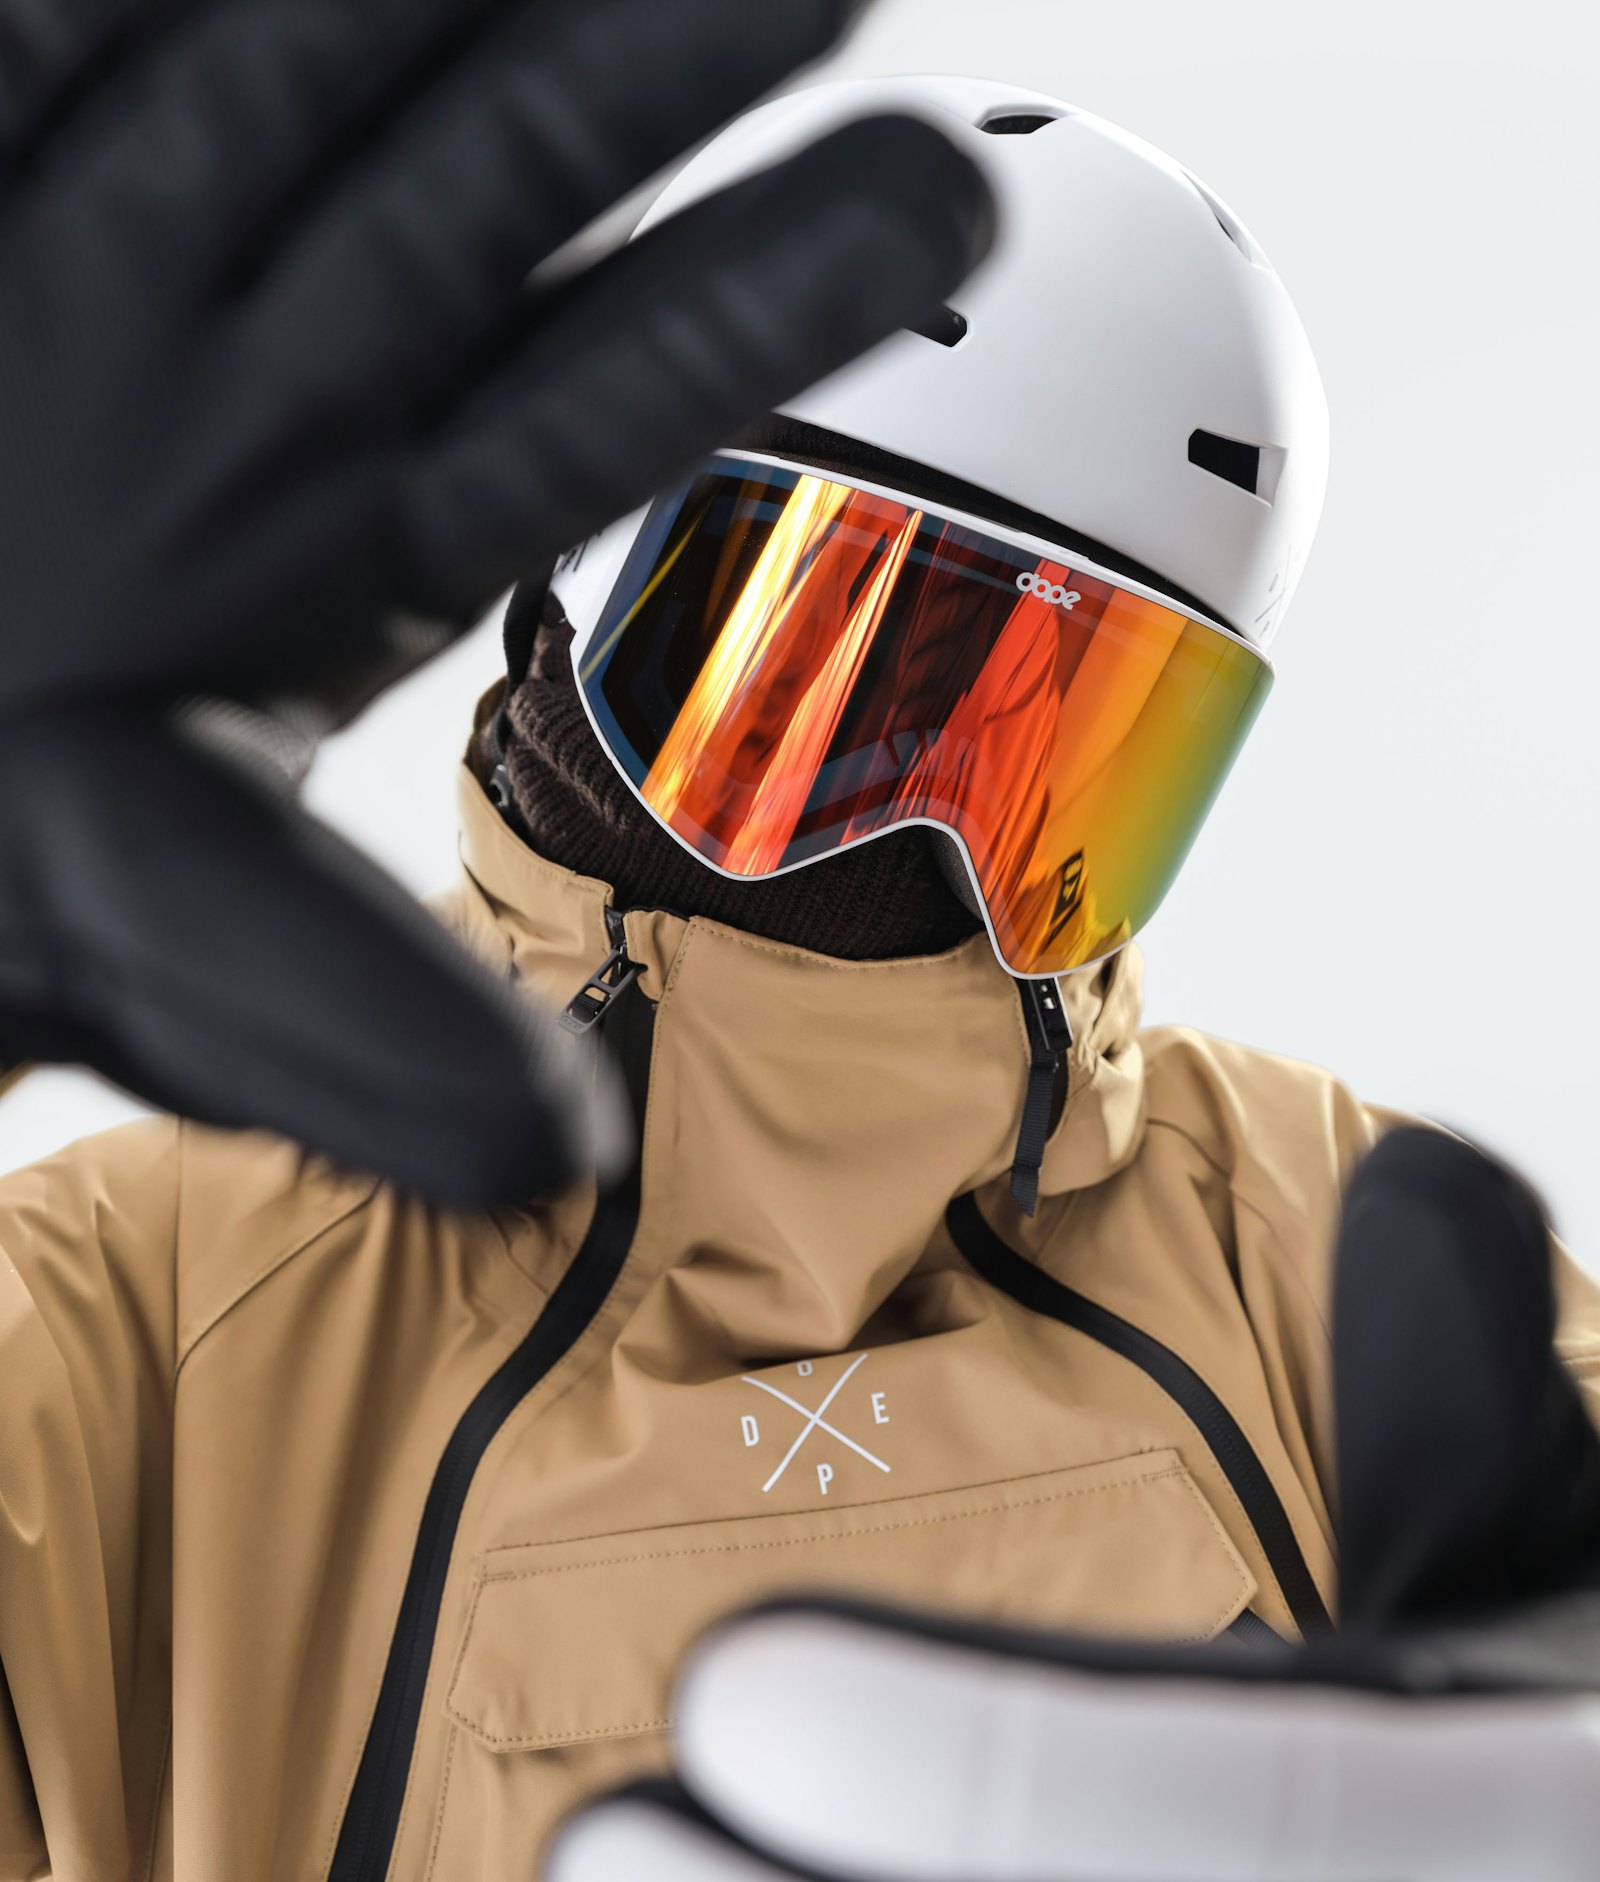 Akin 2020 スキージャケット メンズ Gold